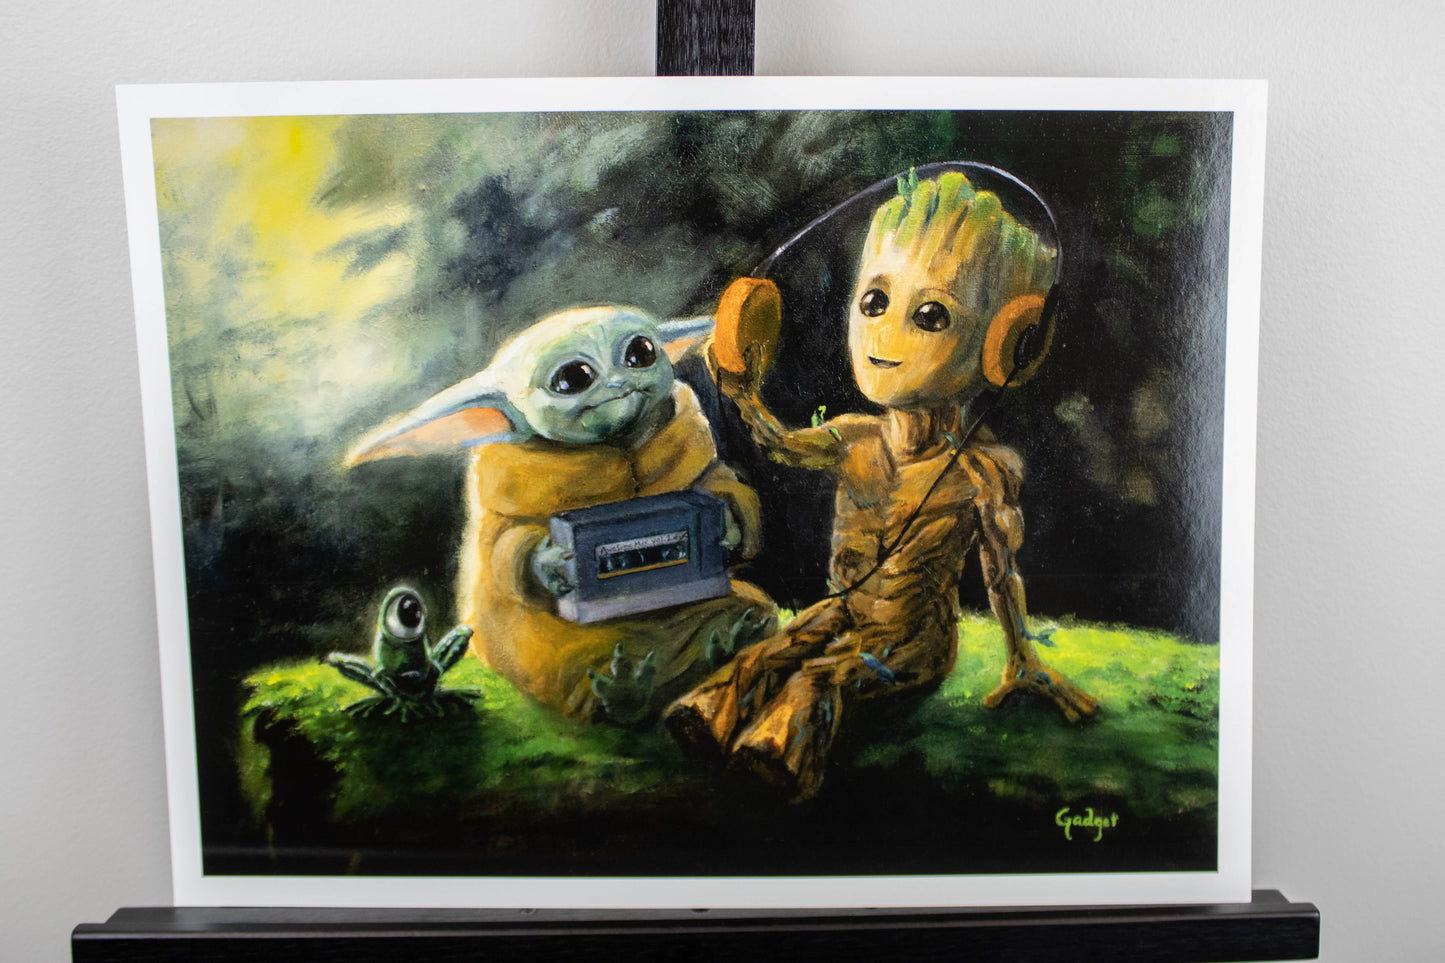 Grogu & Baby Groot "Baby Grooves" (Marvel x Star Wars) Parody Art Print